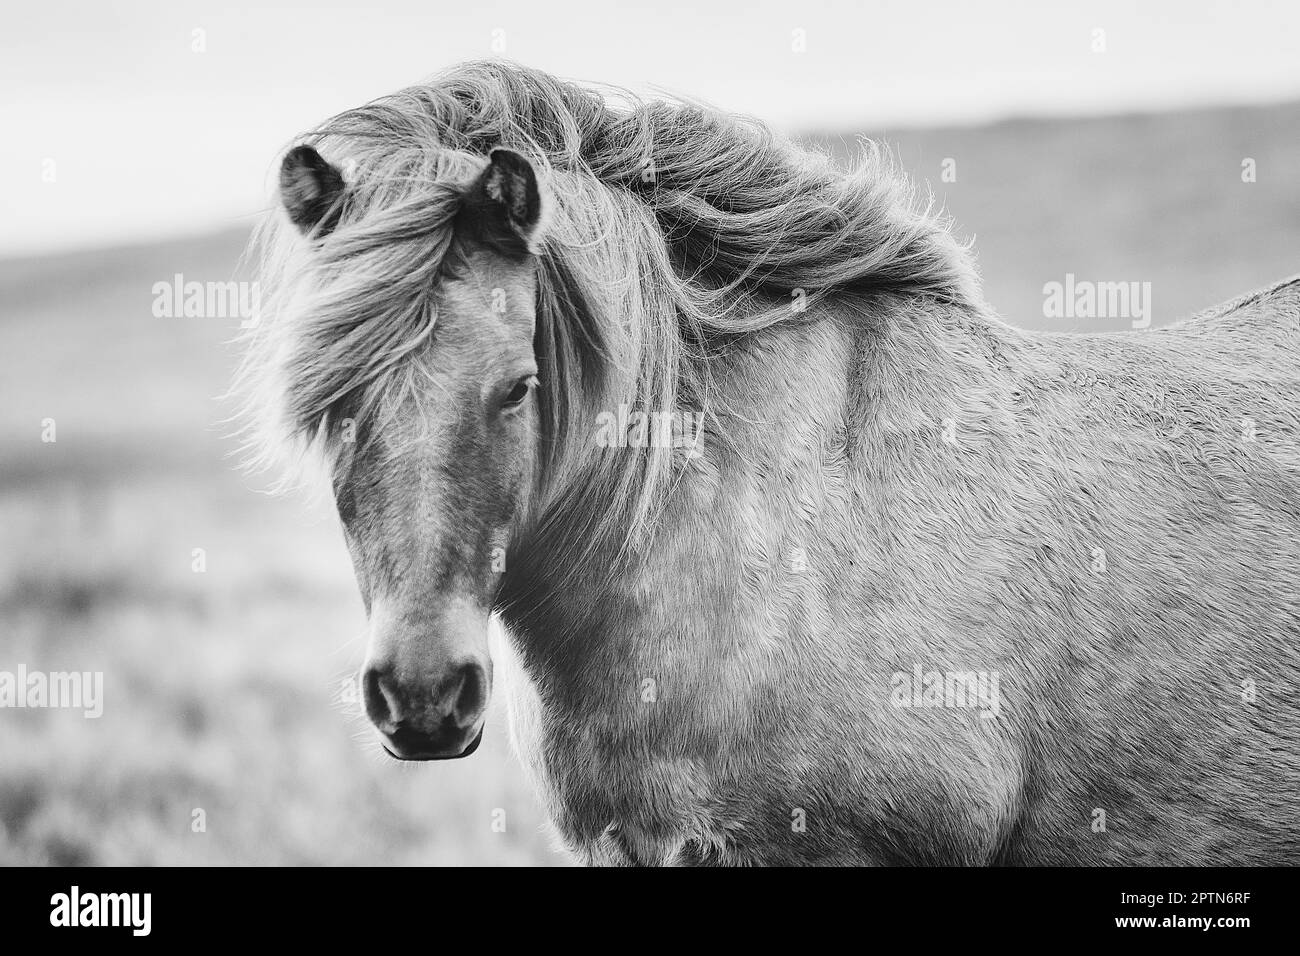 Le cheval islandais est une race de cheval développée en Islande. Banque D'Images